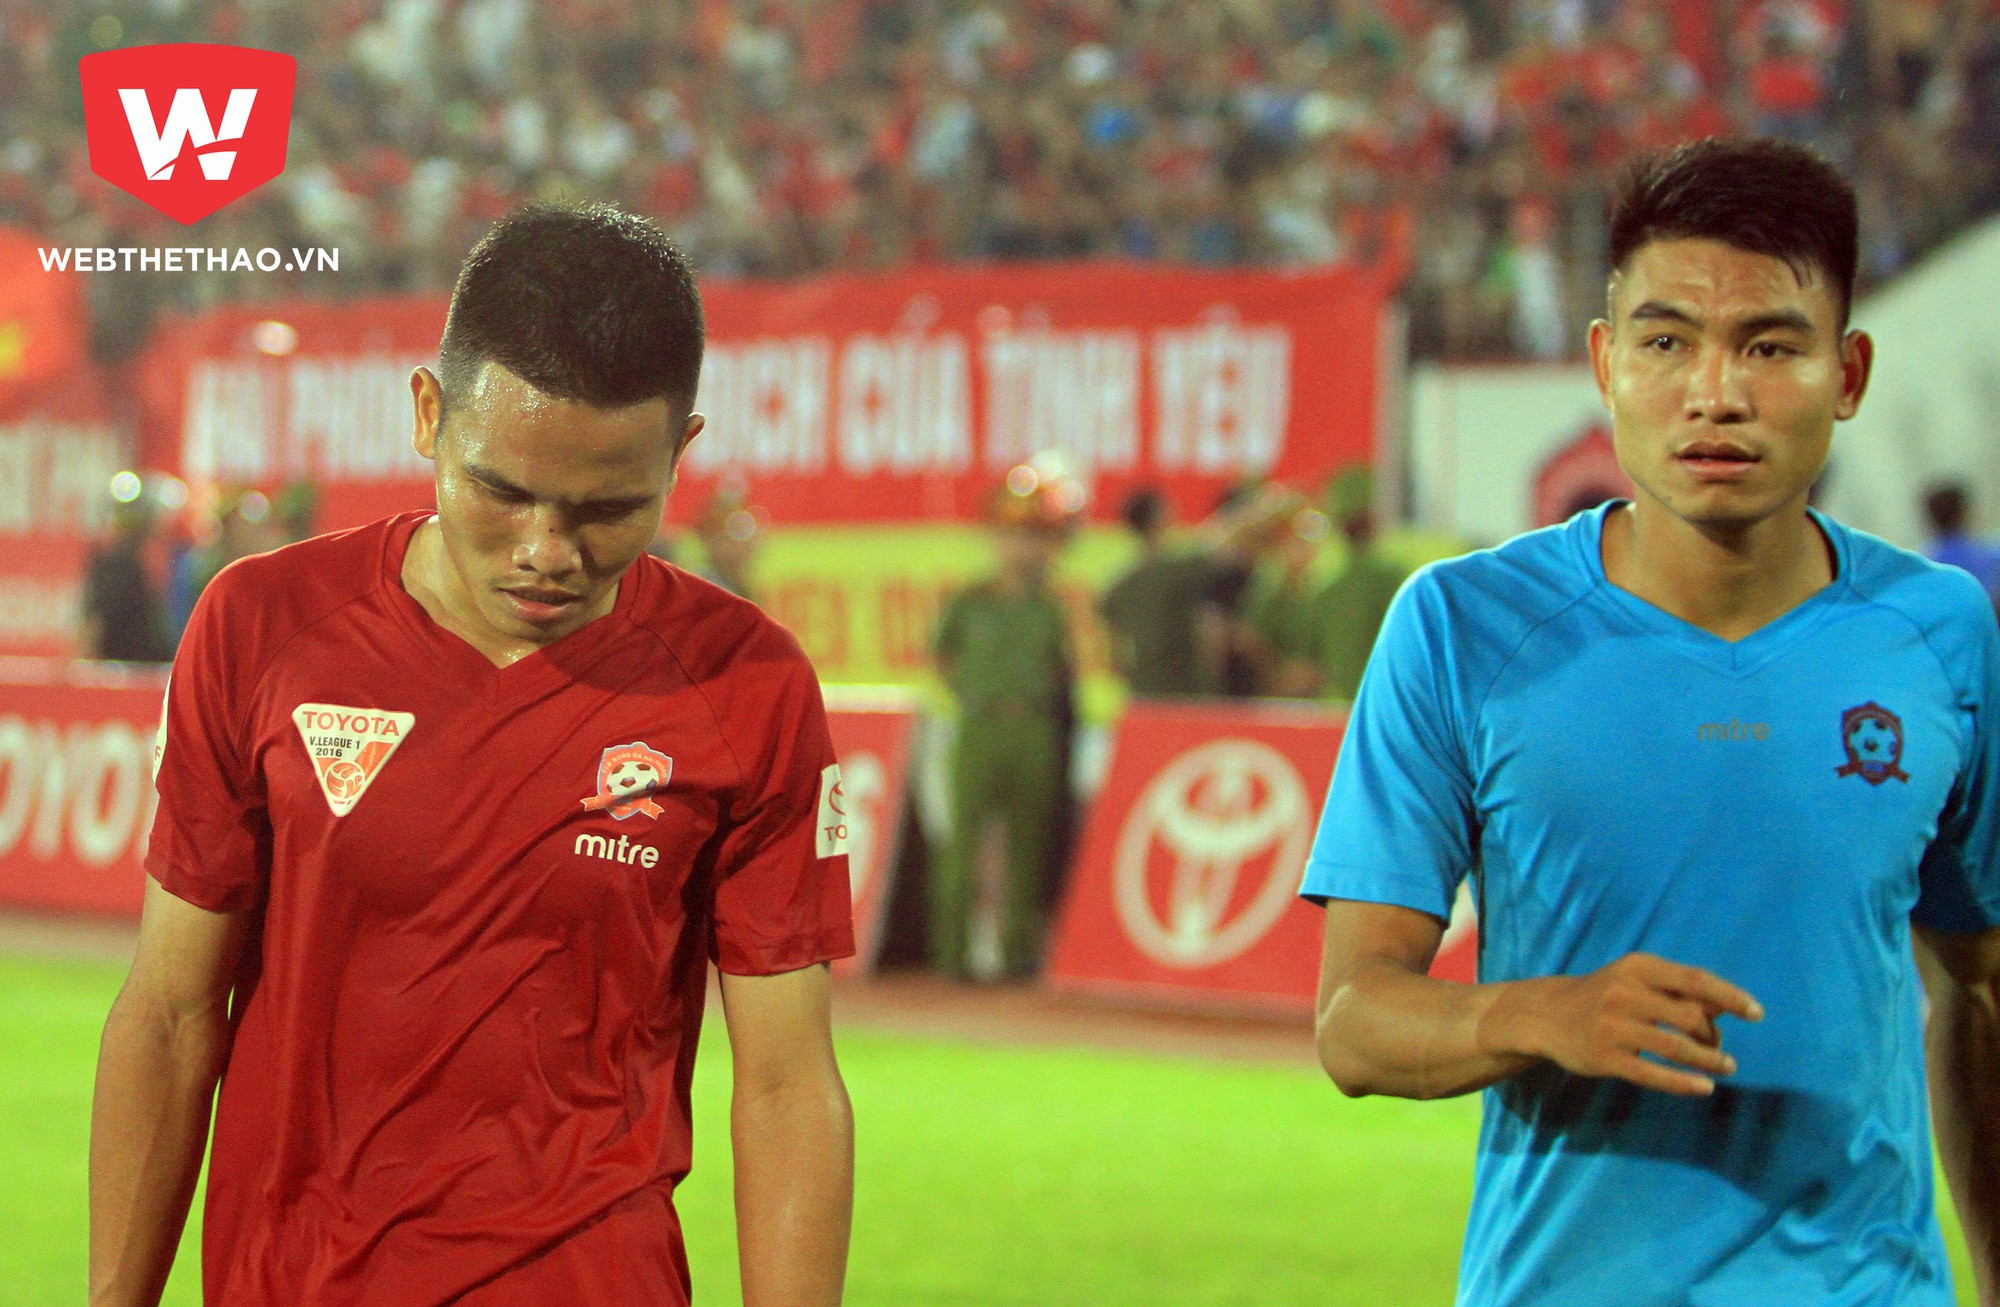 Nếu tận dụng tốt hơn các cơ hội có được, Lê Văn Thắng sẽ không phải buồn sầu sau trận đấu.